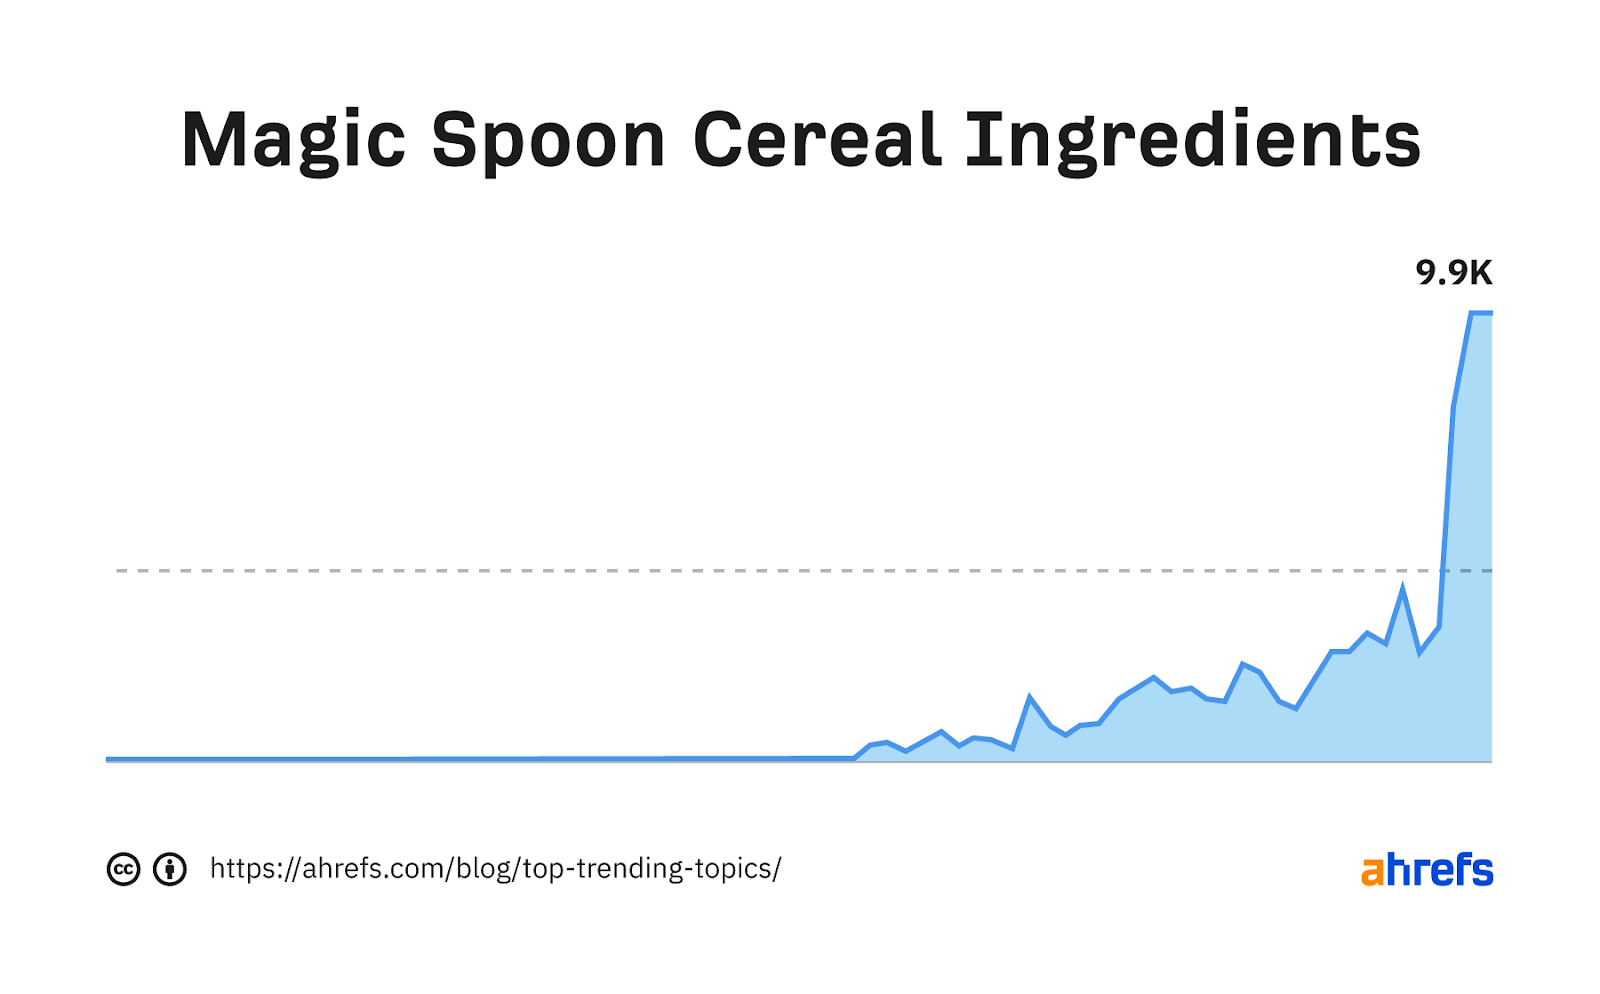 Gráfico de tendencia de la palabra clave "la cuchara mágica de ingredientes de cereales" 